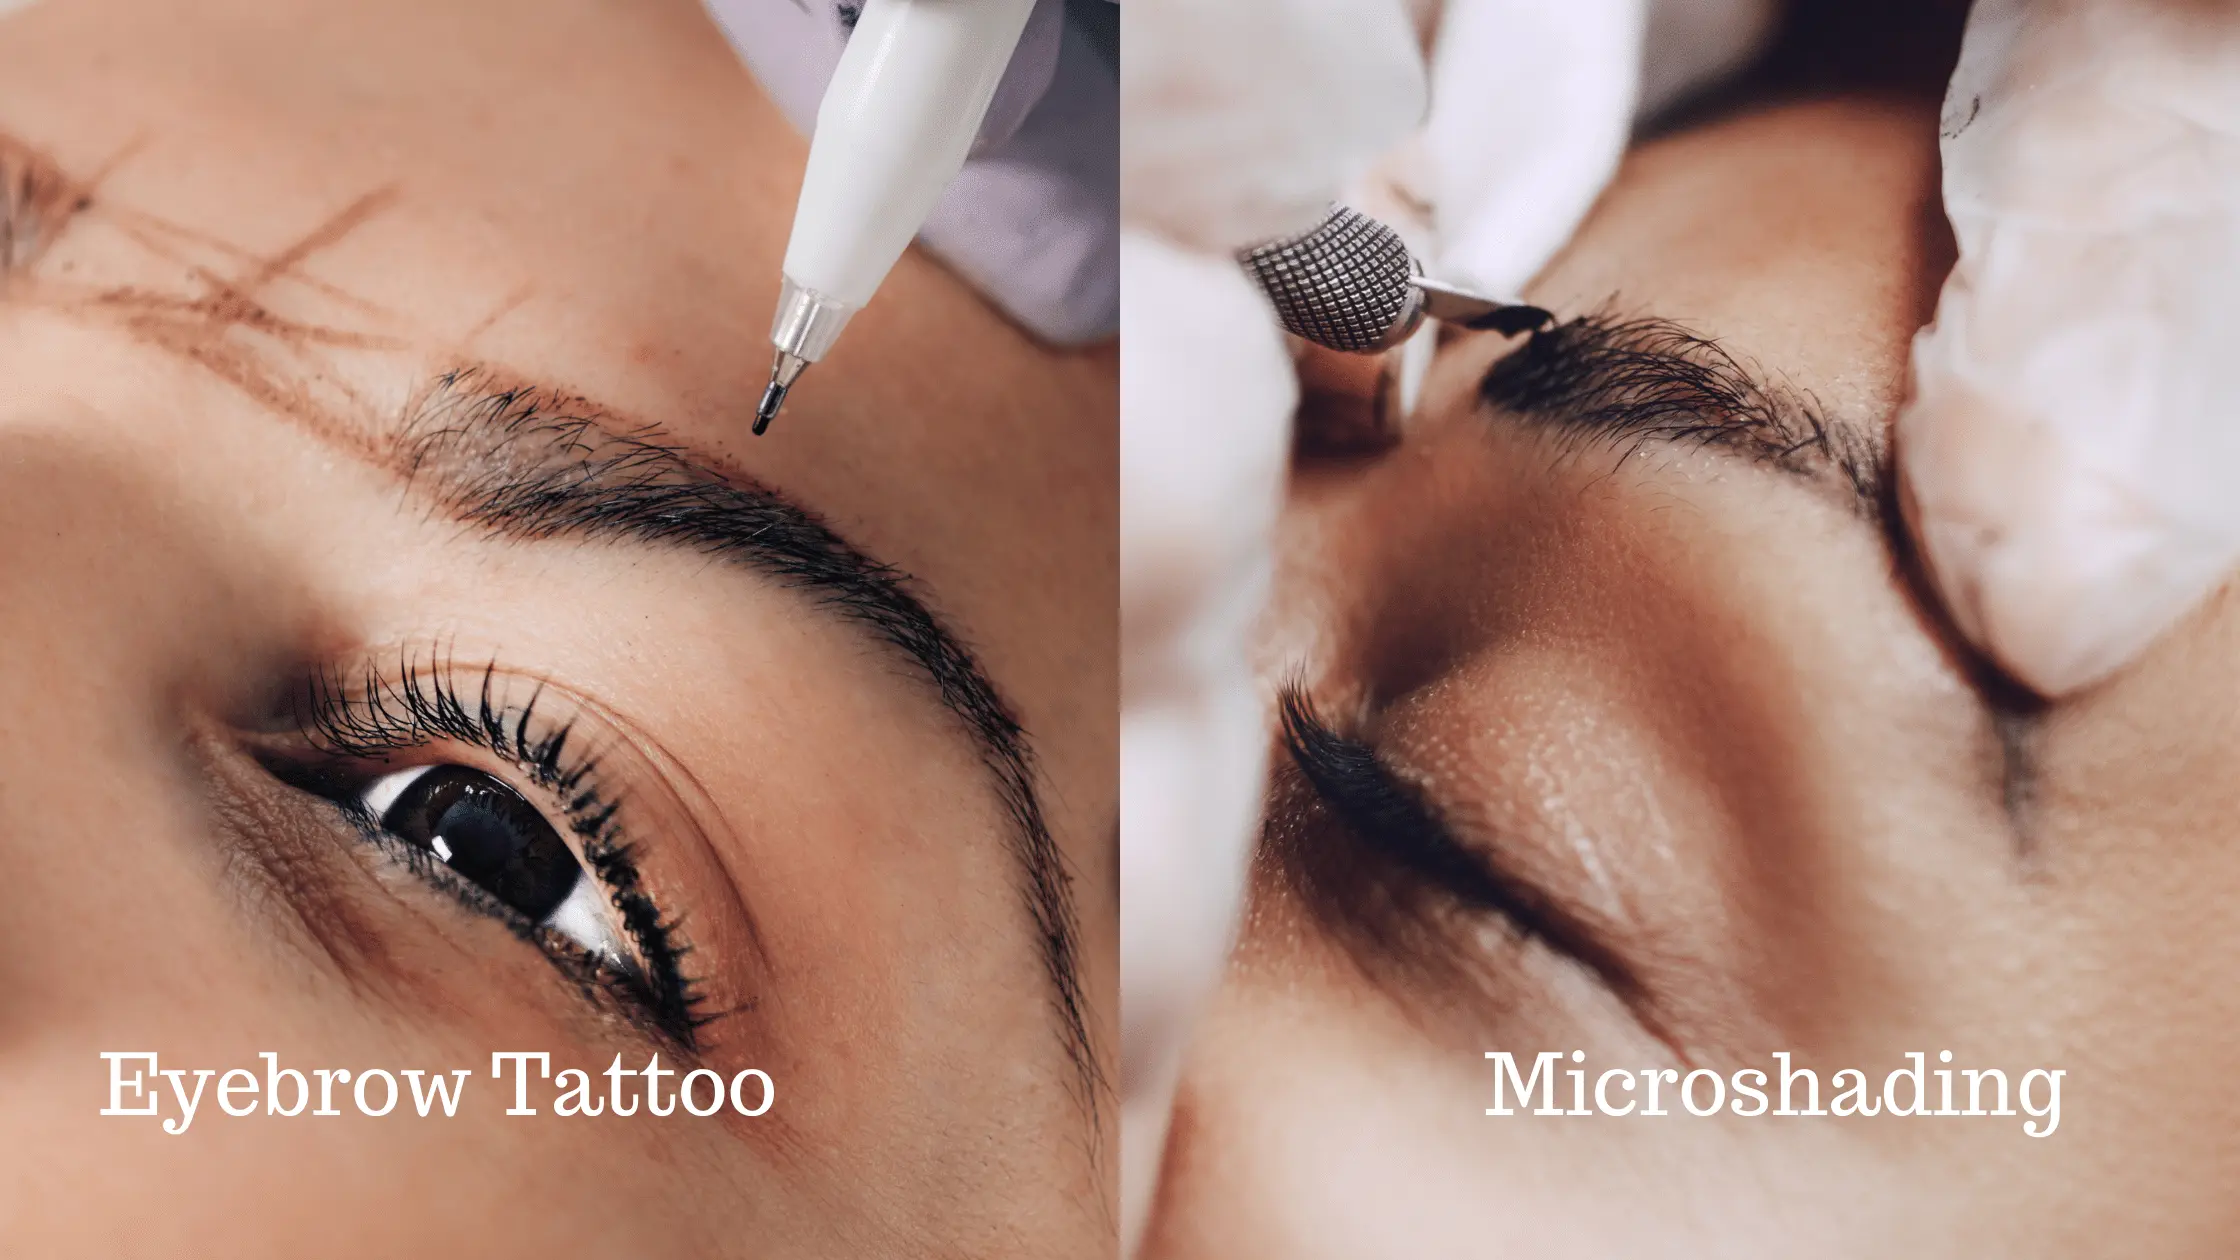 Similarities Between Eyebrow Tattoo and Microshading